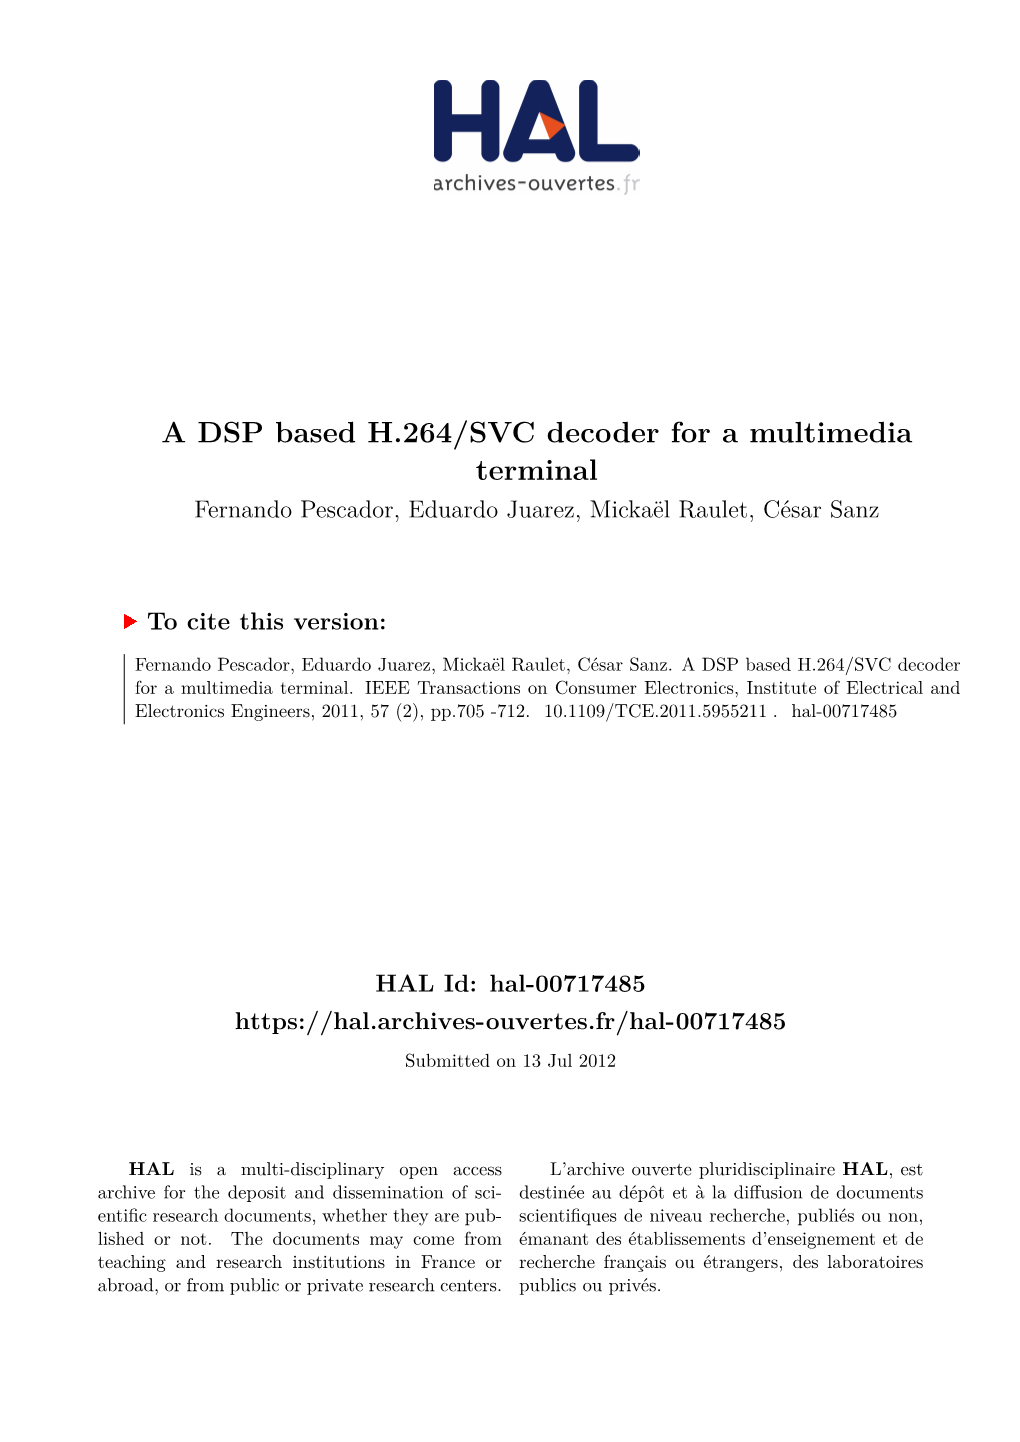 A DSP Based H.264/SVC Decoder for a Multimedia Terminal Fernando Pescador, Eduardo Juarez, Mickaël Raulet, César Sanz